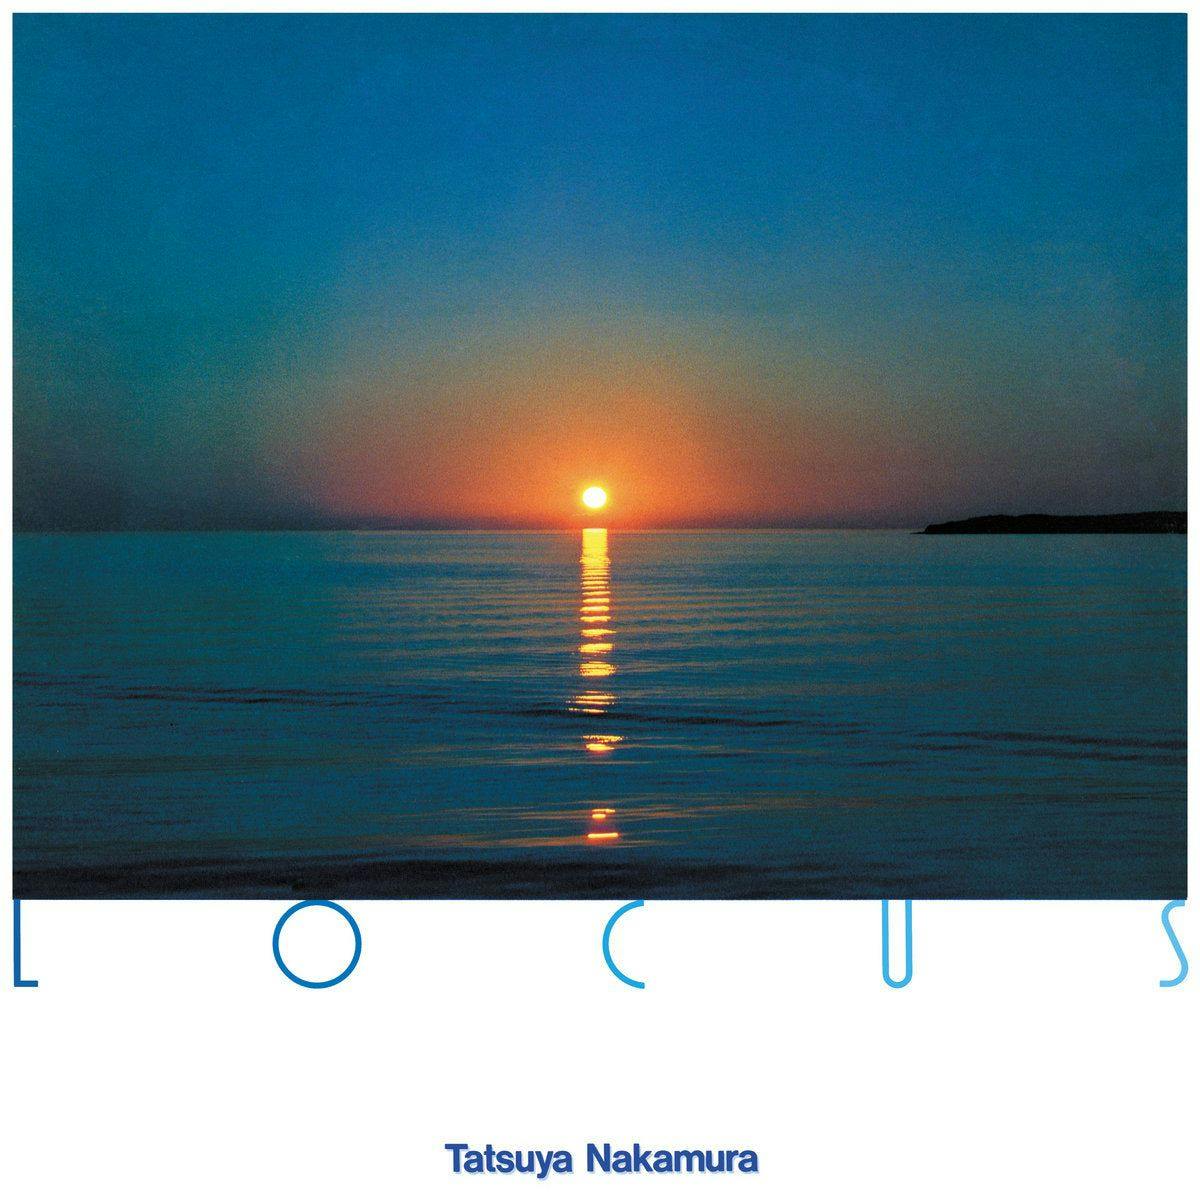 Japanese dummer Tatsuya Nakamura reissues 1984 LP 'Locus' on BBE